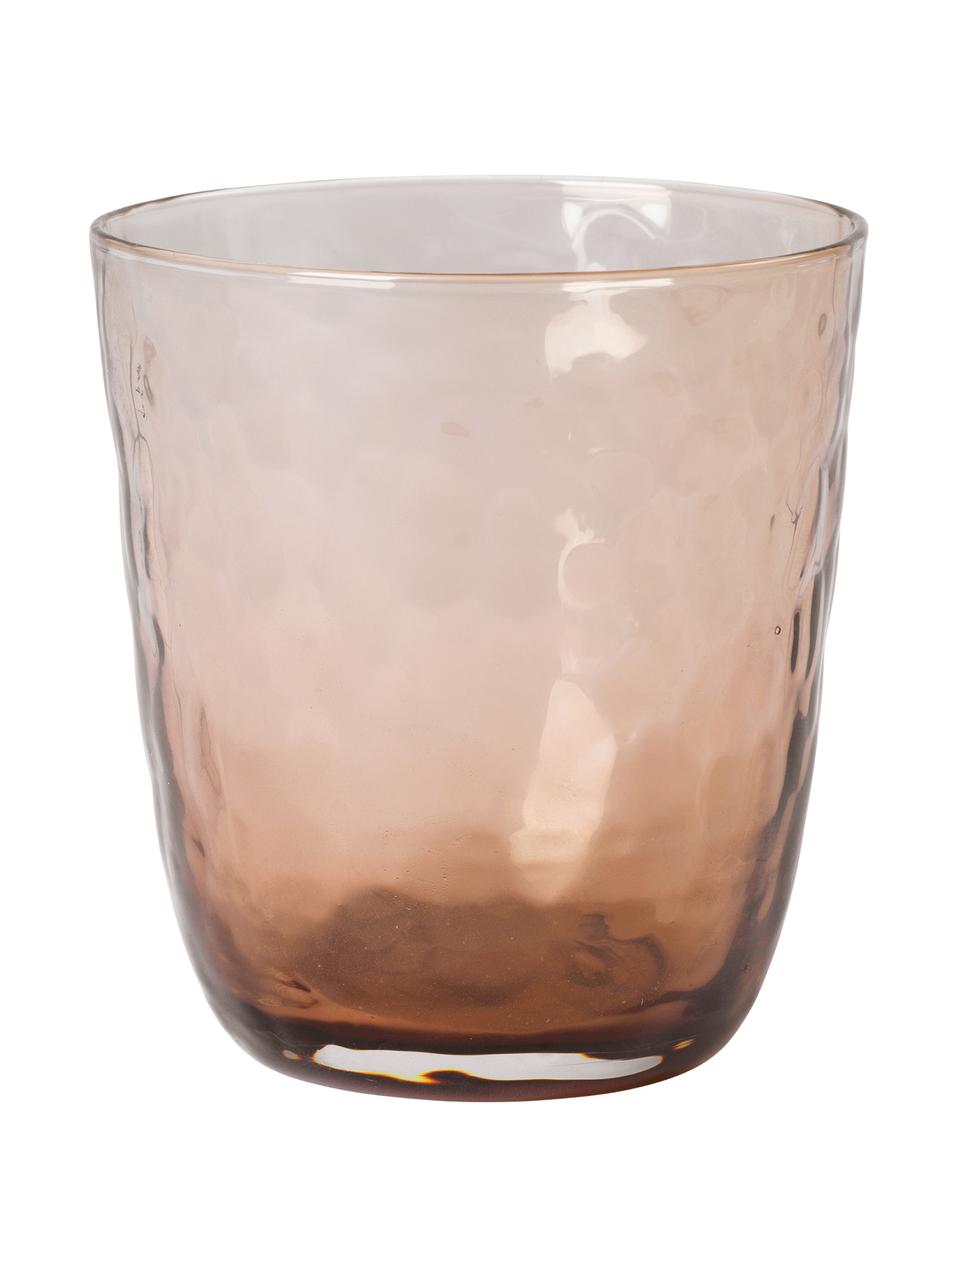 Mondgeblazen waterglazen Hammered met oneven oppervlak, 4 stuks, Glas, Bruin, Ø 9 x H 10 cm, 500 ml